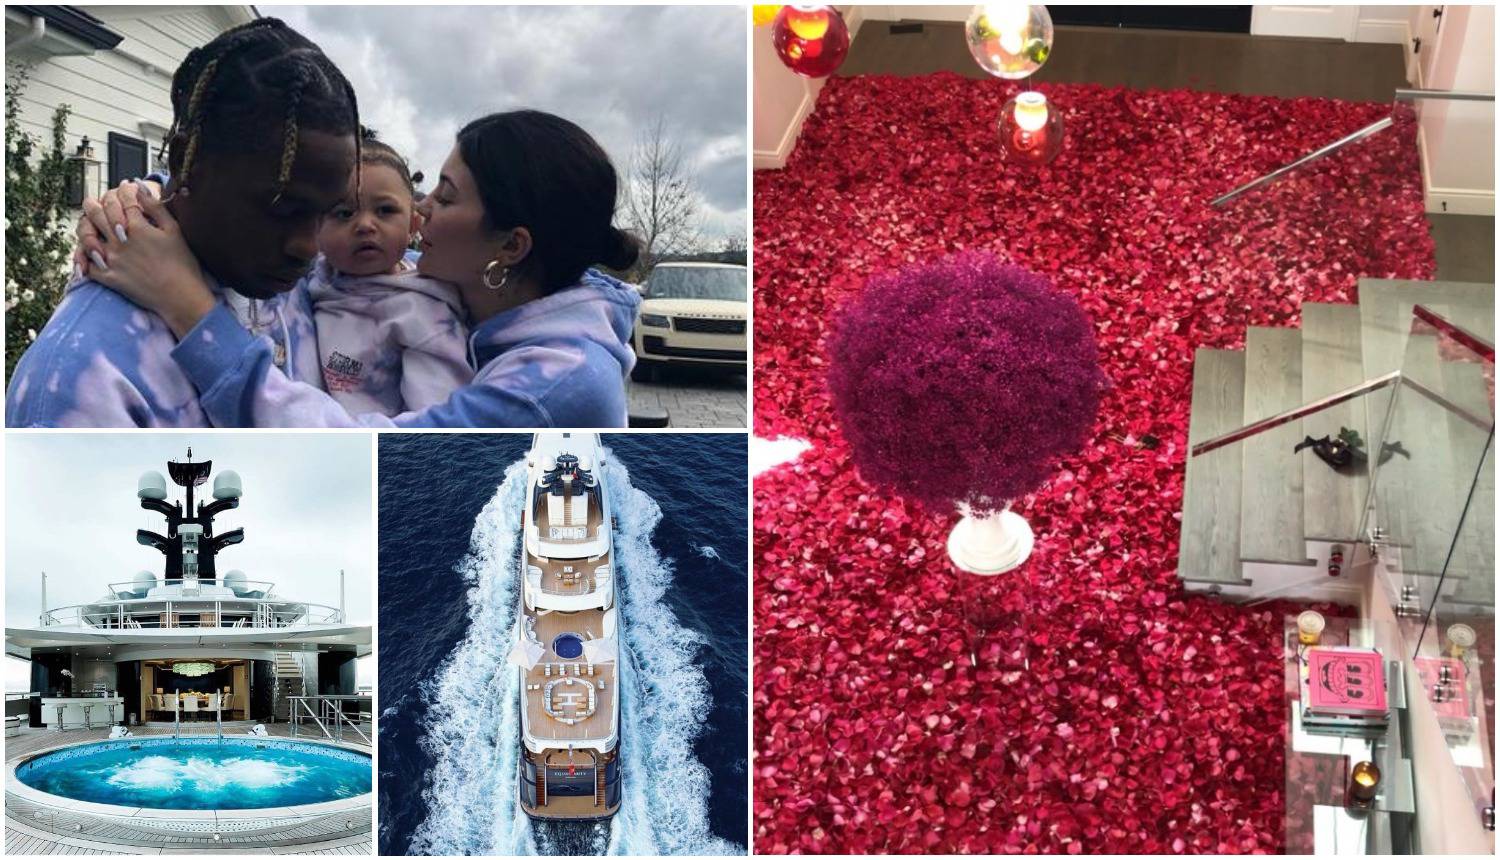 Luksuzna zabava: Kylie dobila kuću punu ruža, slavi na jahti